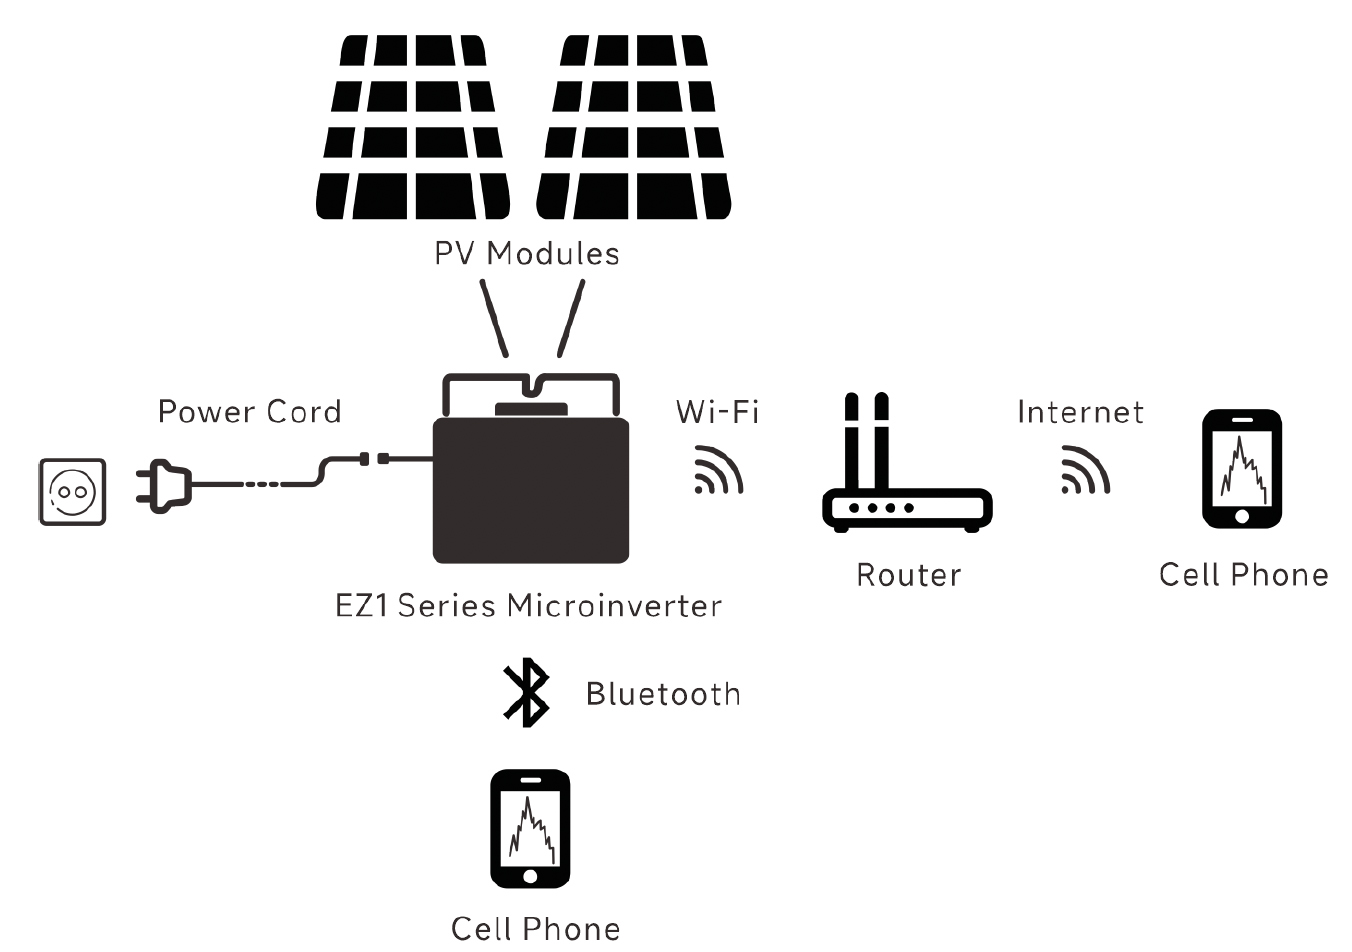 Kit solaire 1275W 48V 230V easyconnect pour site autonome